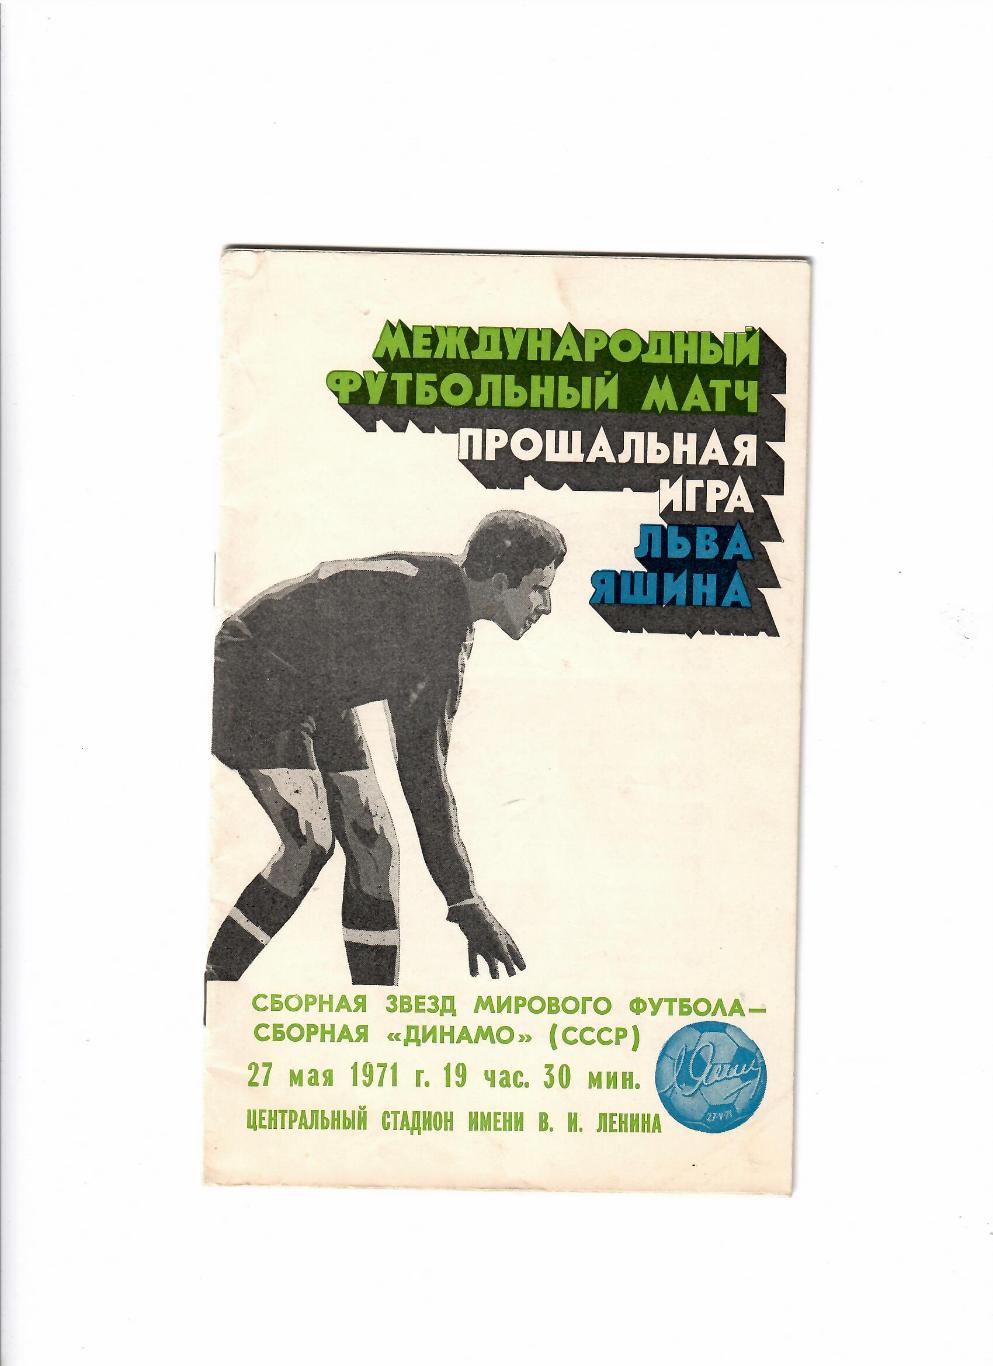 Сборная звезд мирового футбола - Сборная Динамо СССР 1971